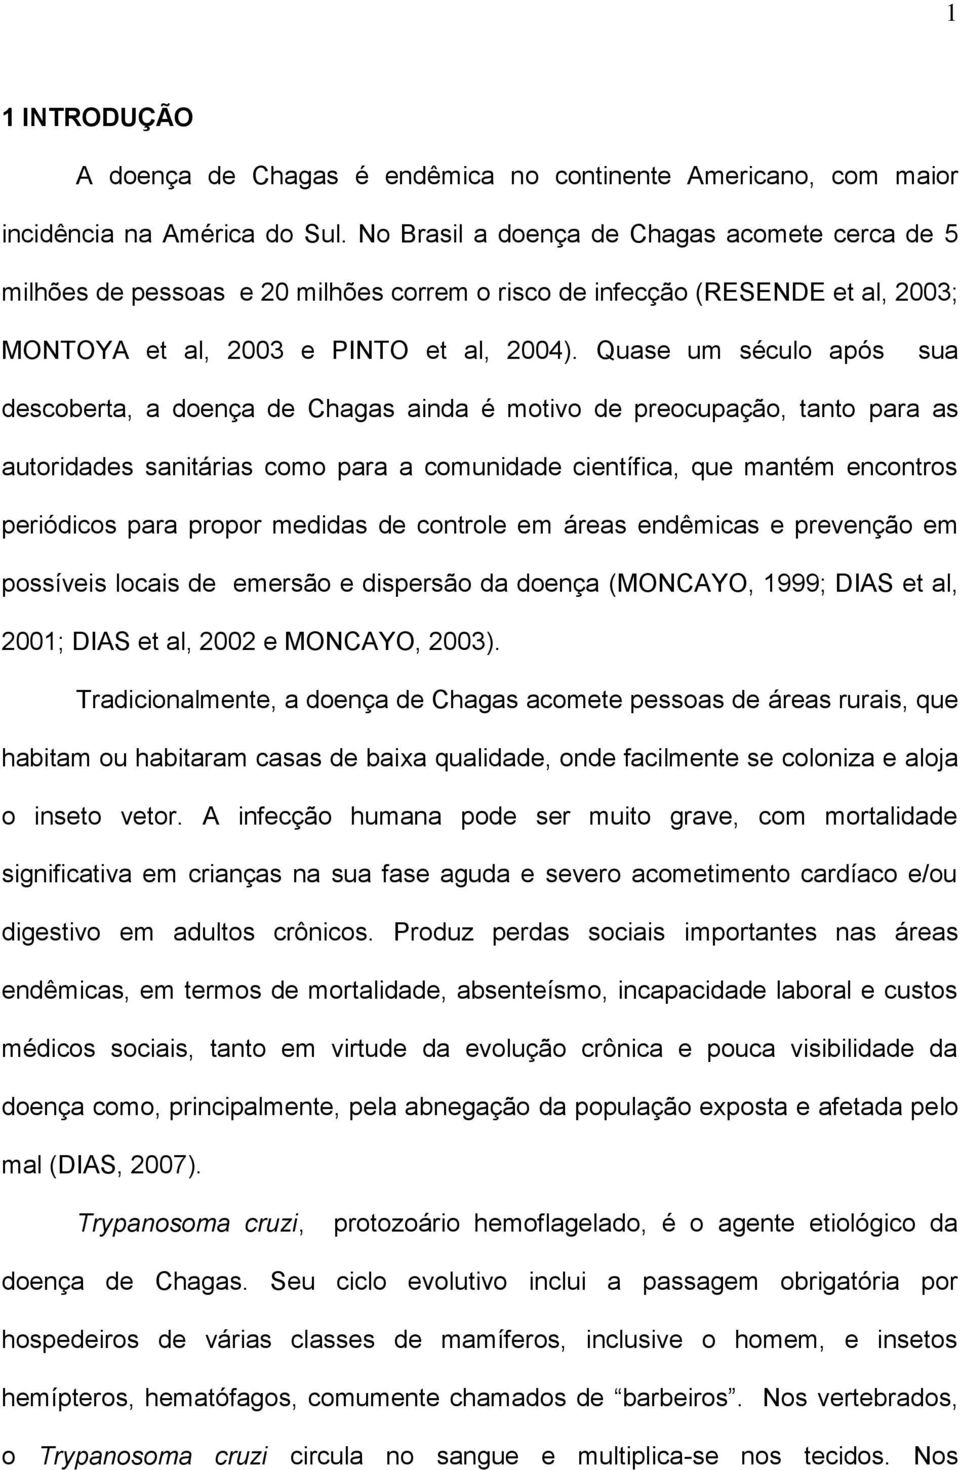 Quase um século após sua descoberta, a doença de Chagas ainda é motivo de preocupação, tanto para as autoridades sanitárias como para a comunidade científica, que mantém encontros periódicos para